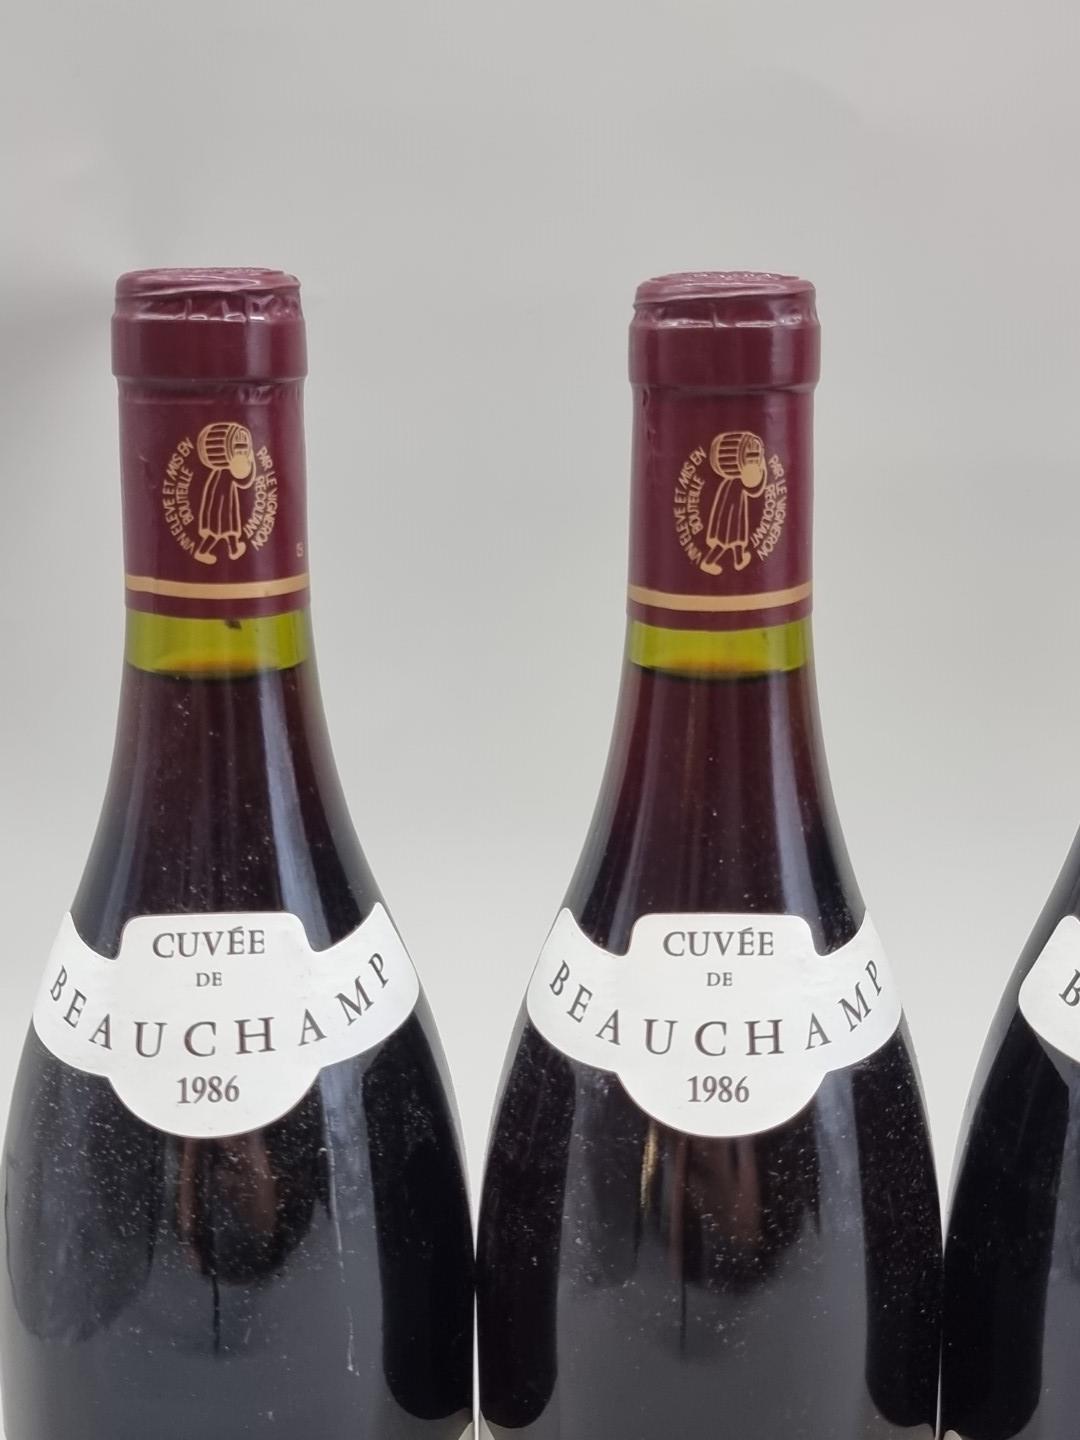 Six 75cl bottles of Gigondas Cuvee Beauchamps, 1986, Chateau de Montmirail. (6) - Image 2 of 4